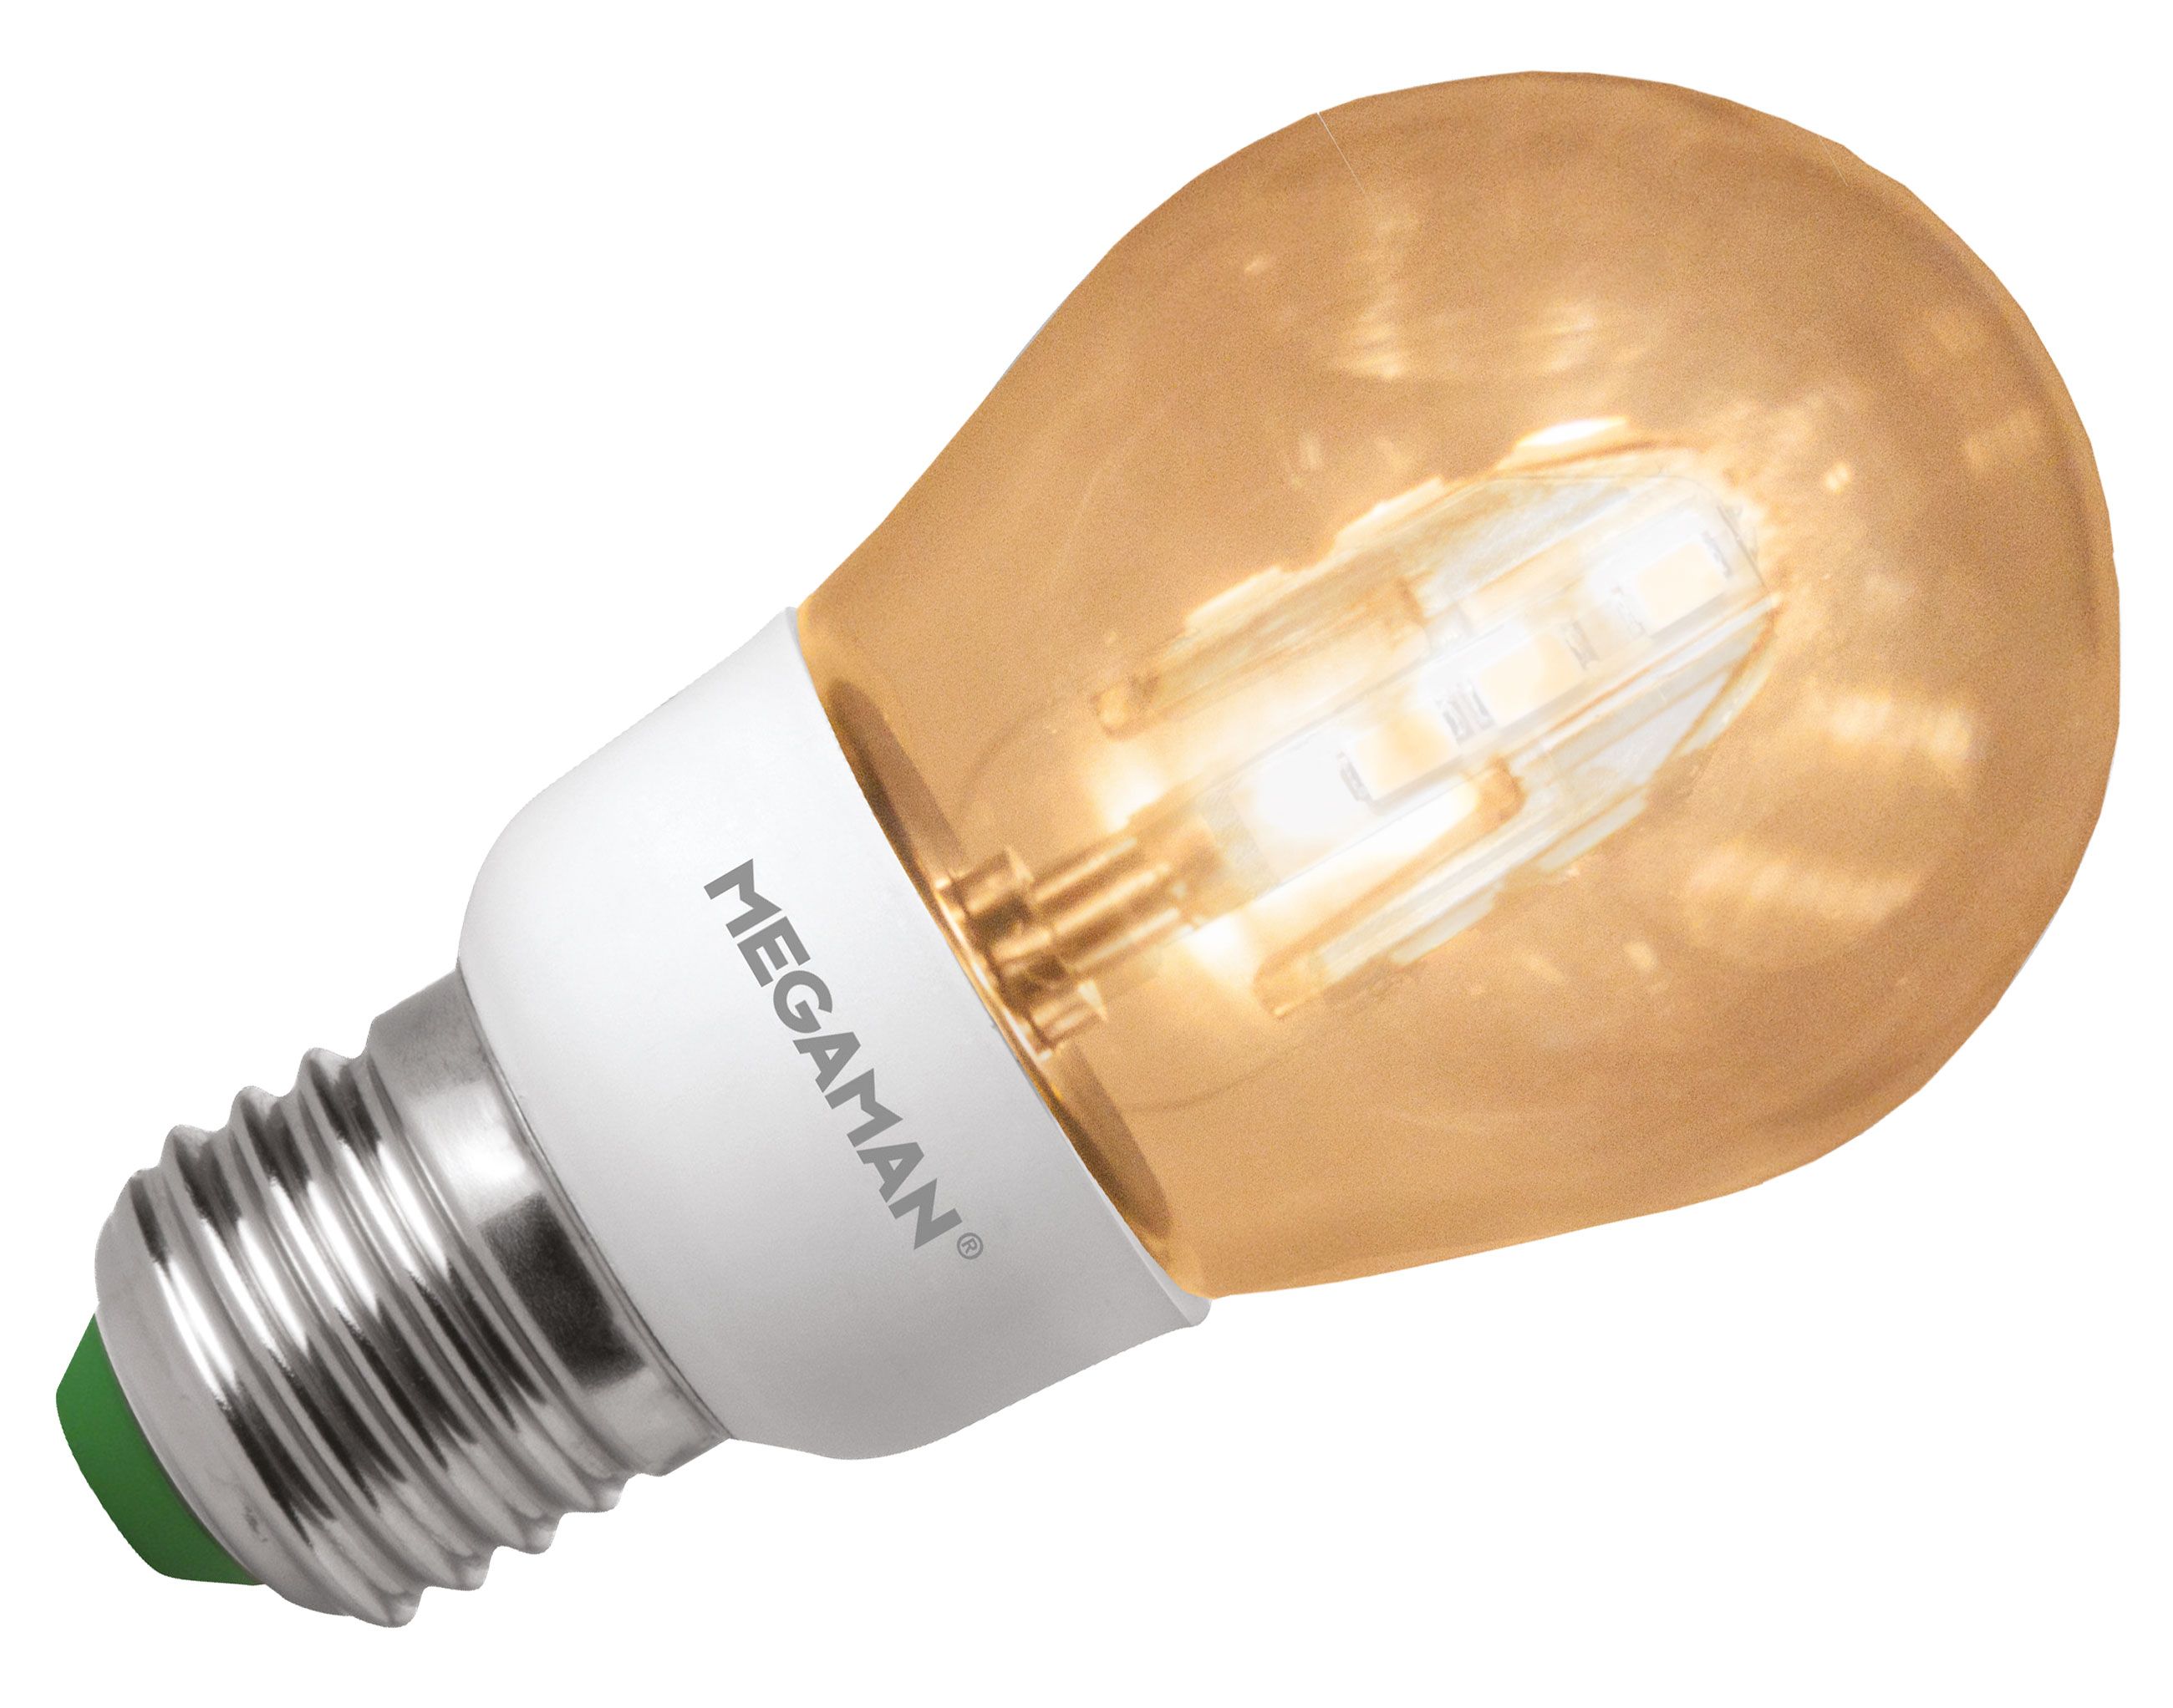 Besparing: Uw besparing op levensduur: EUR 187,00 + Winkelprijs megaman lamp: EUR 22,95 - Geen aanschafkosten van de te vervangen lamp 25 x 3,00: EUR 75,00 + Geen montagetijdkosten van de te